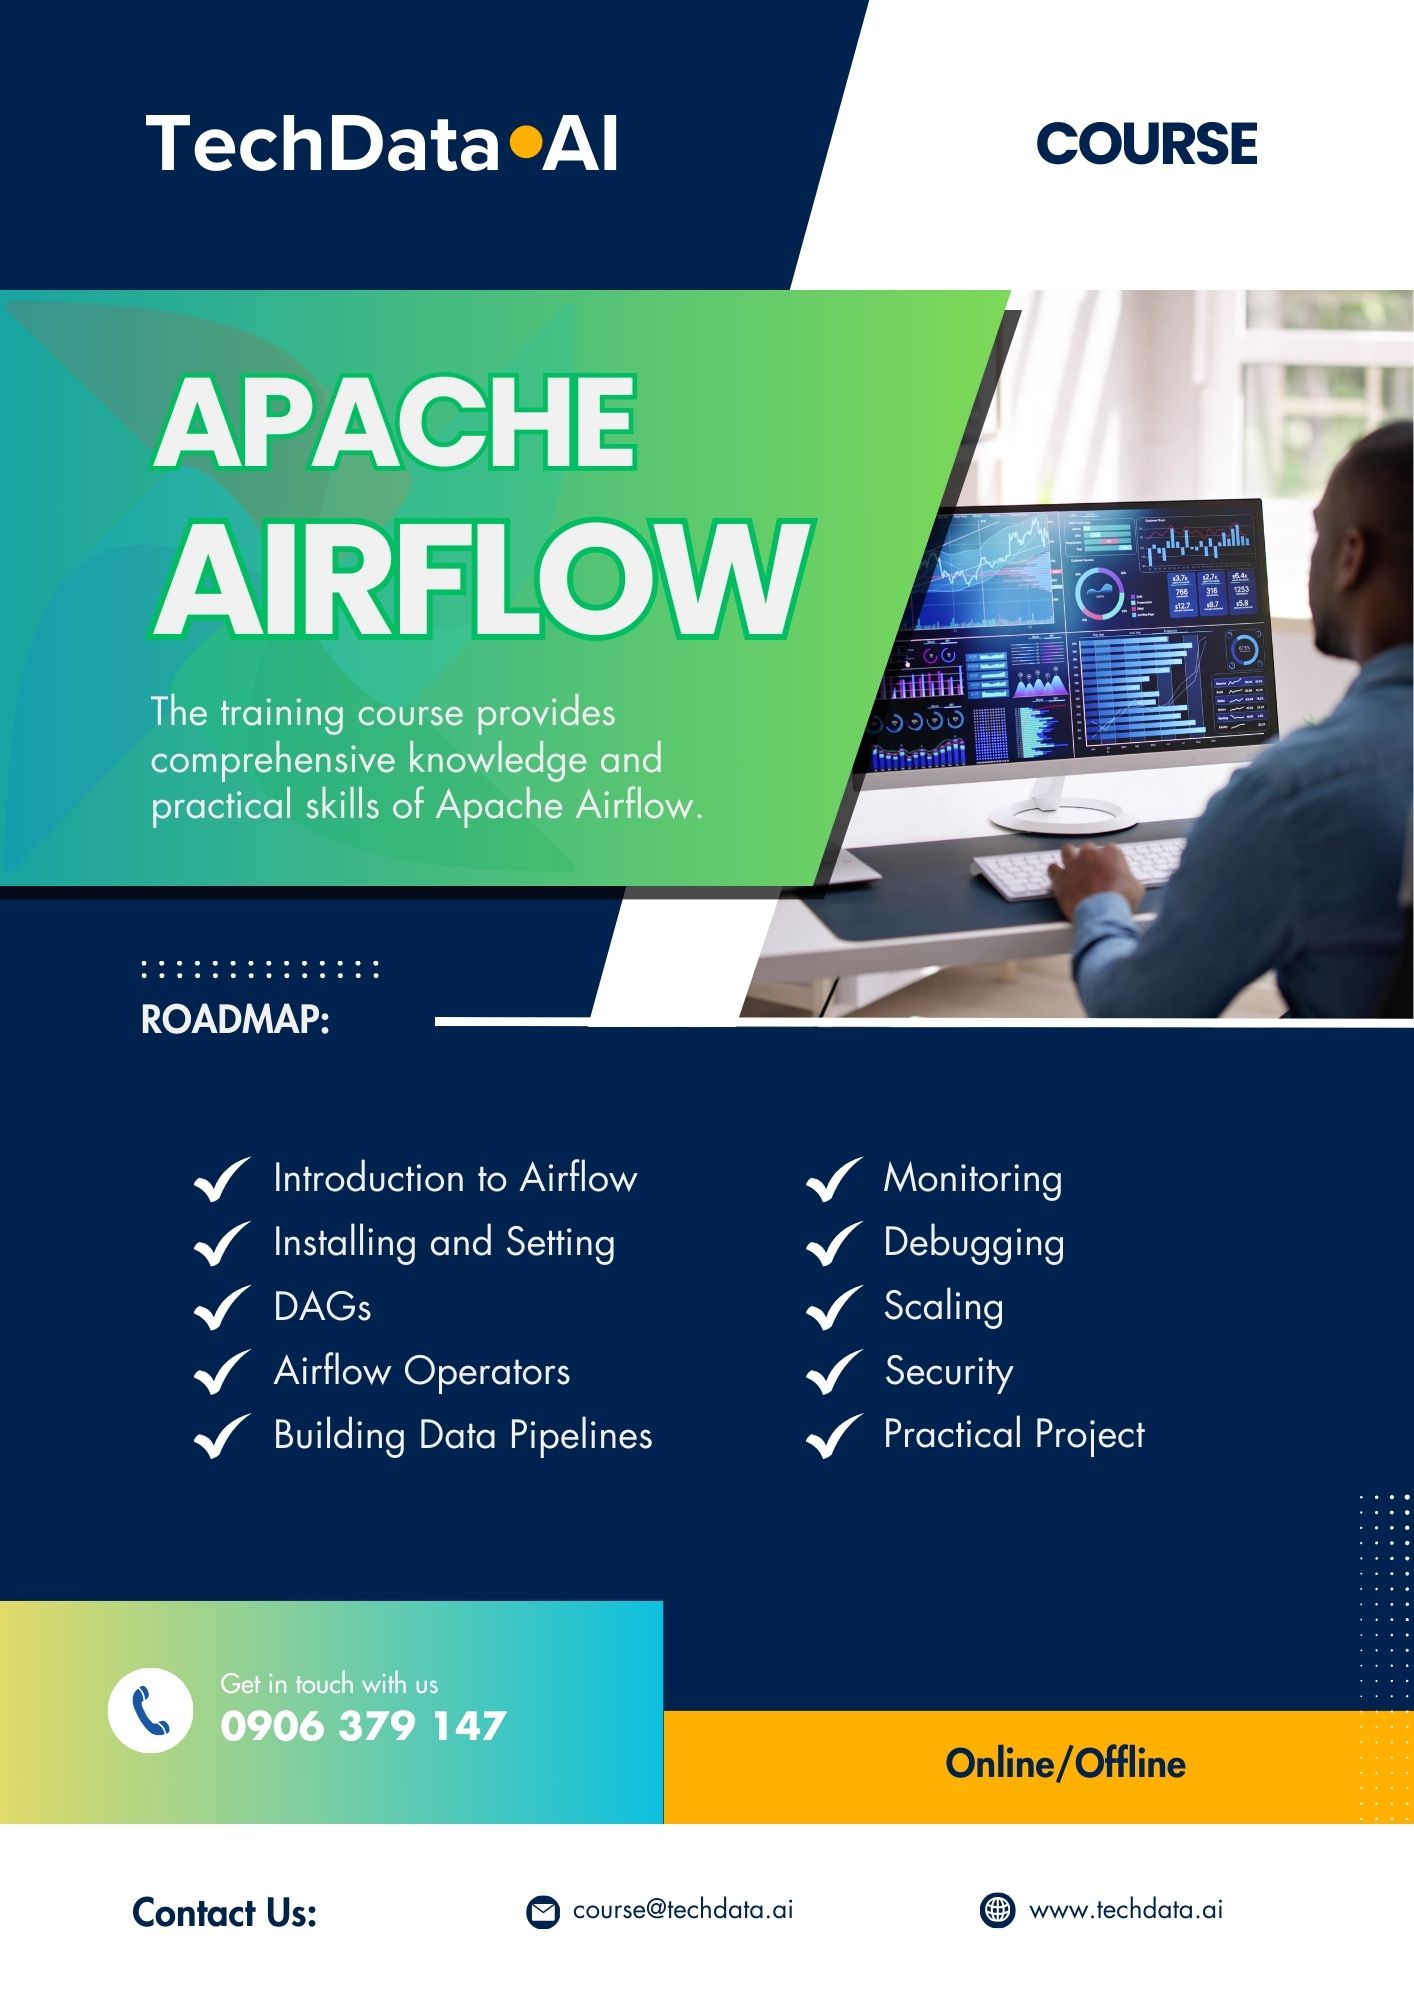 TechData.AI - Airflow Course